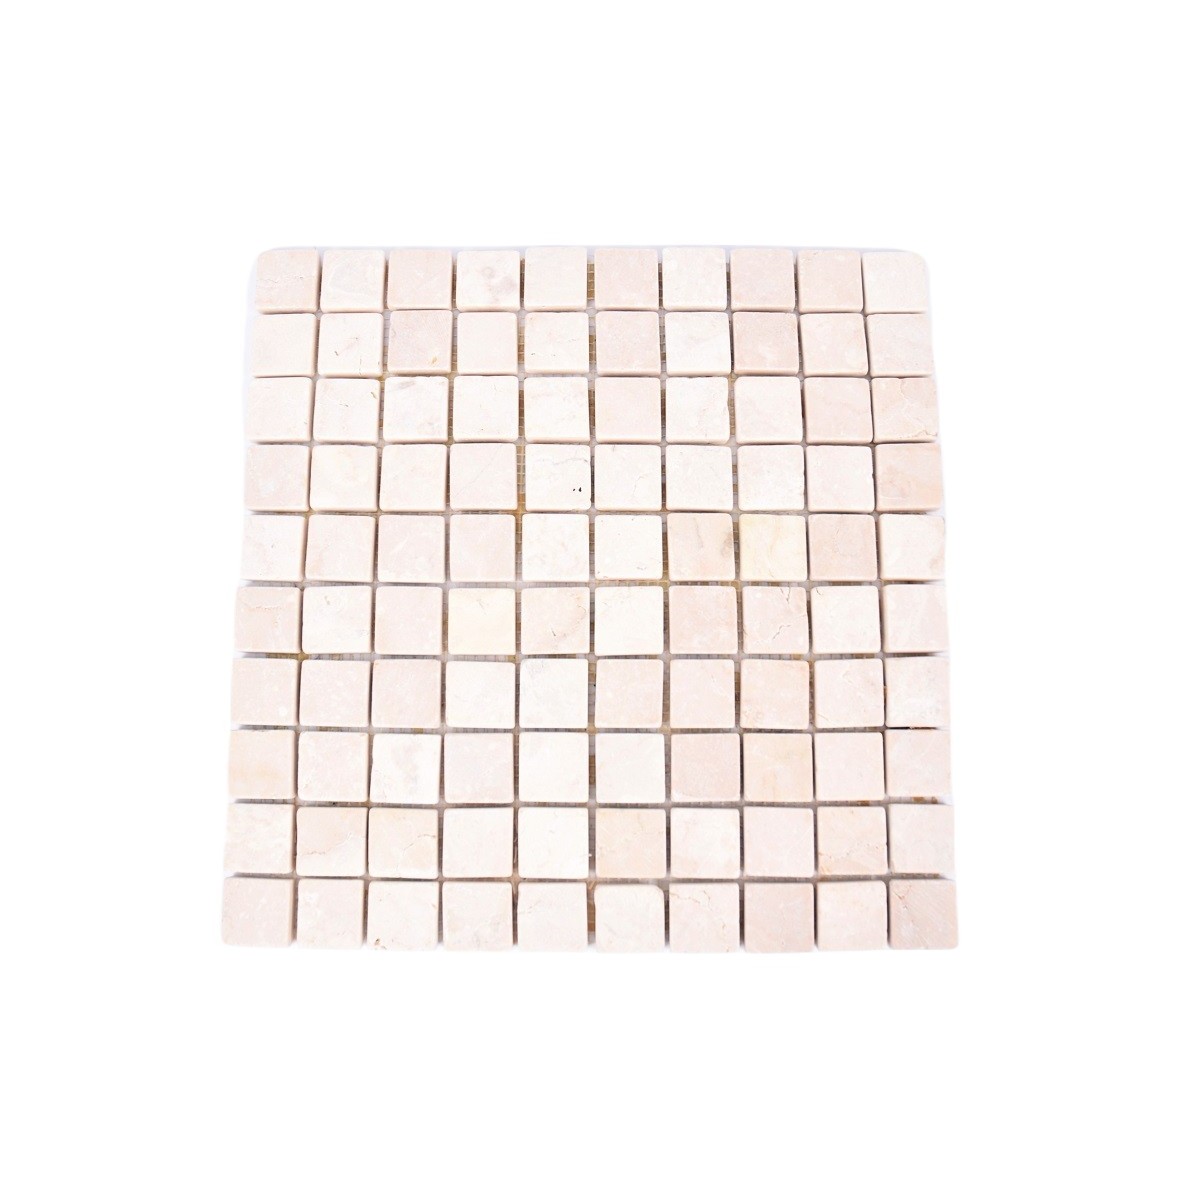 *KOSTKA:  * WHITE 3x3 RUPAT weiß quadratisch mosaik naturstein INDUSTONE